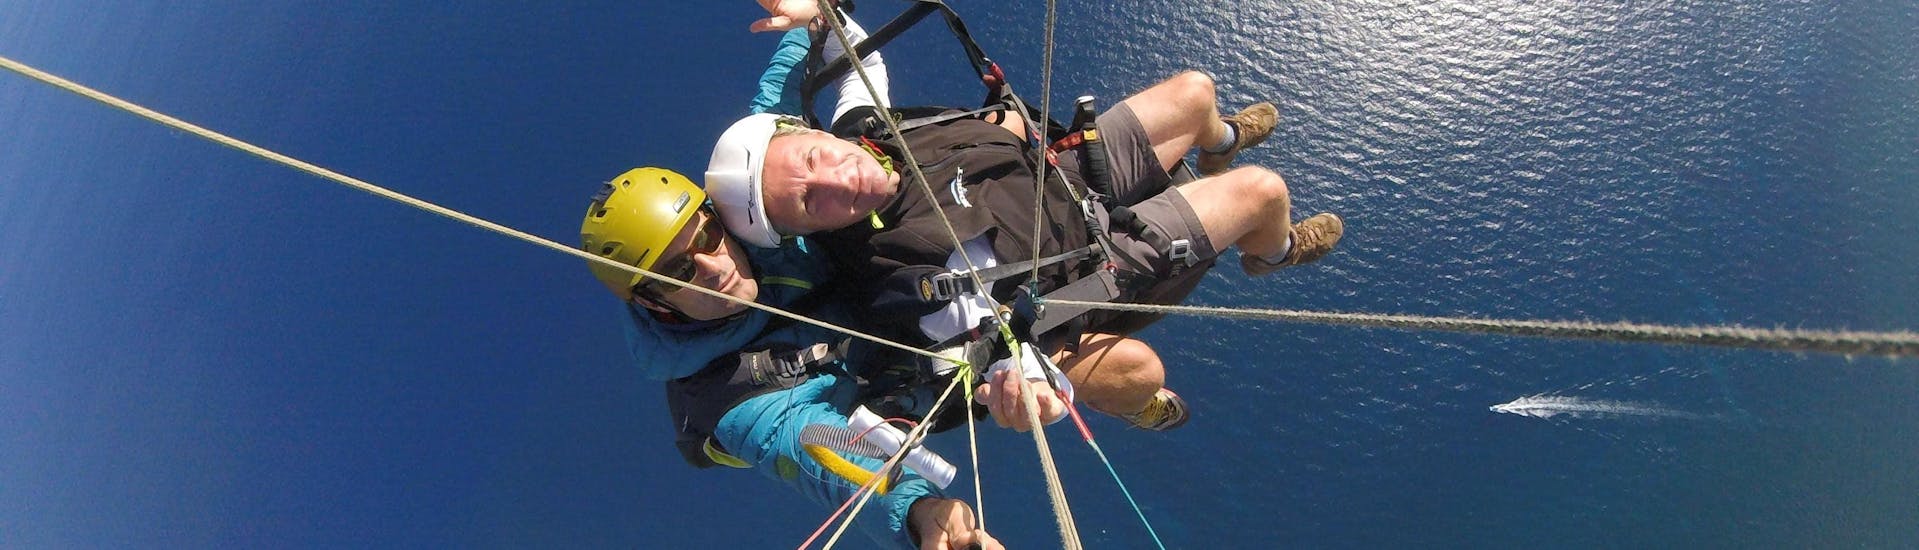 Un pilote de parapente de Saint Leu Parapente effectue un vol tandem parapente - Plaisir 30min au-dessus de la Baie de Saint Leu à La Réunion.